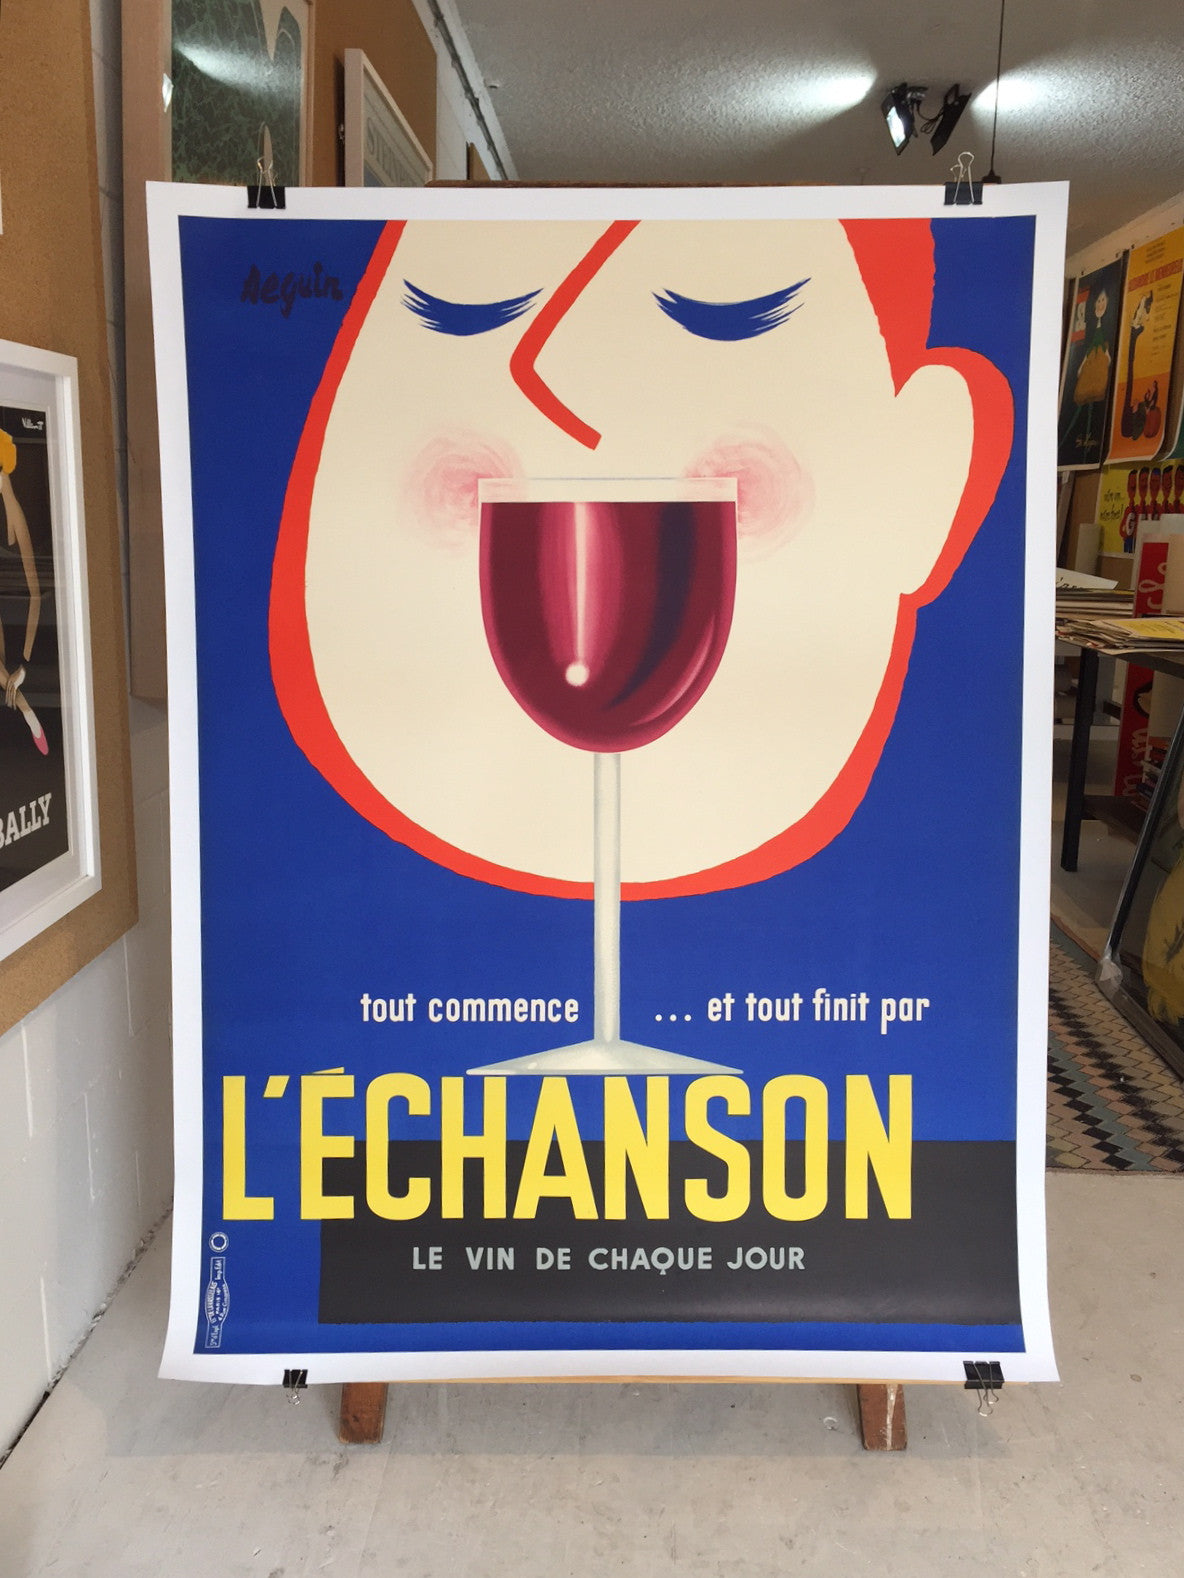 L'echanson by Seguin